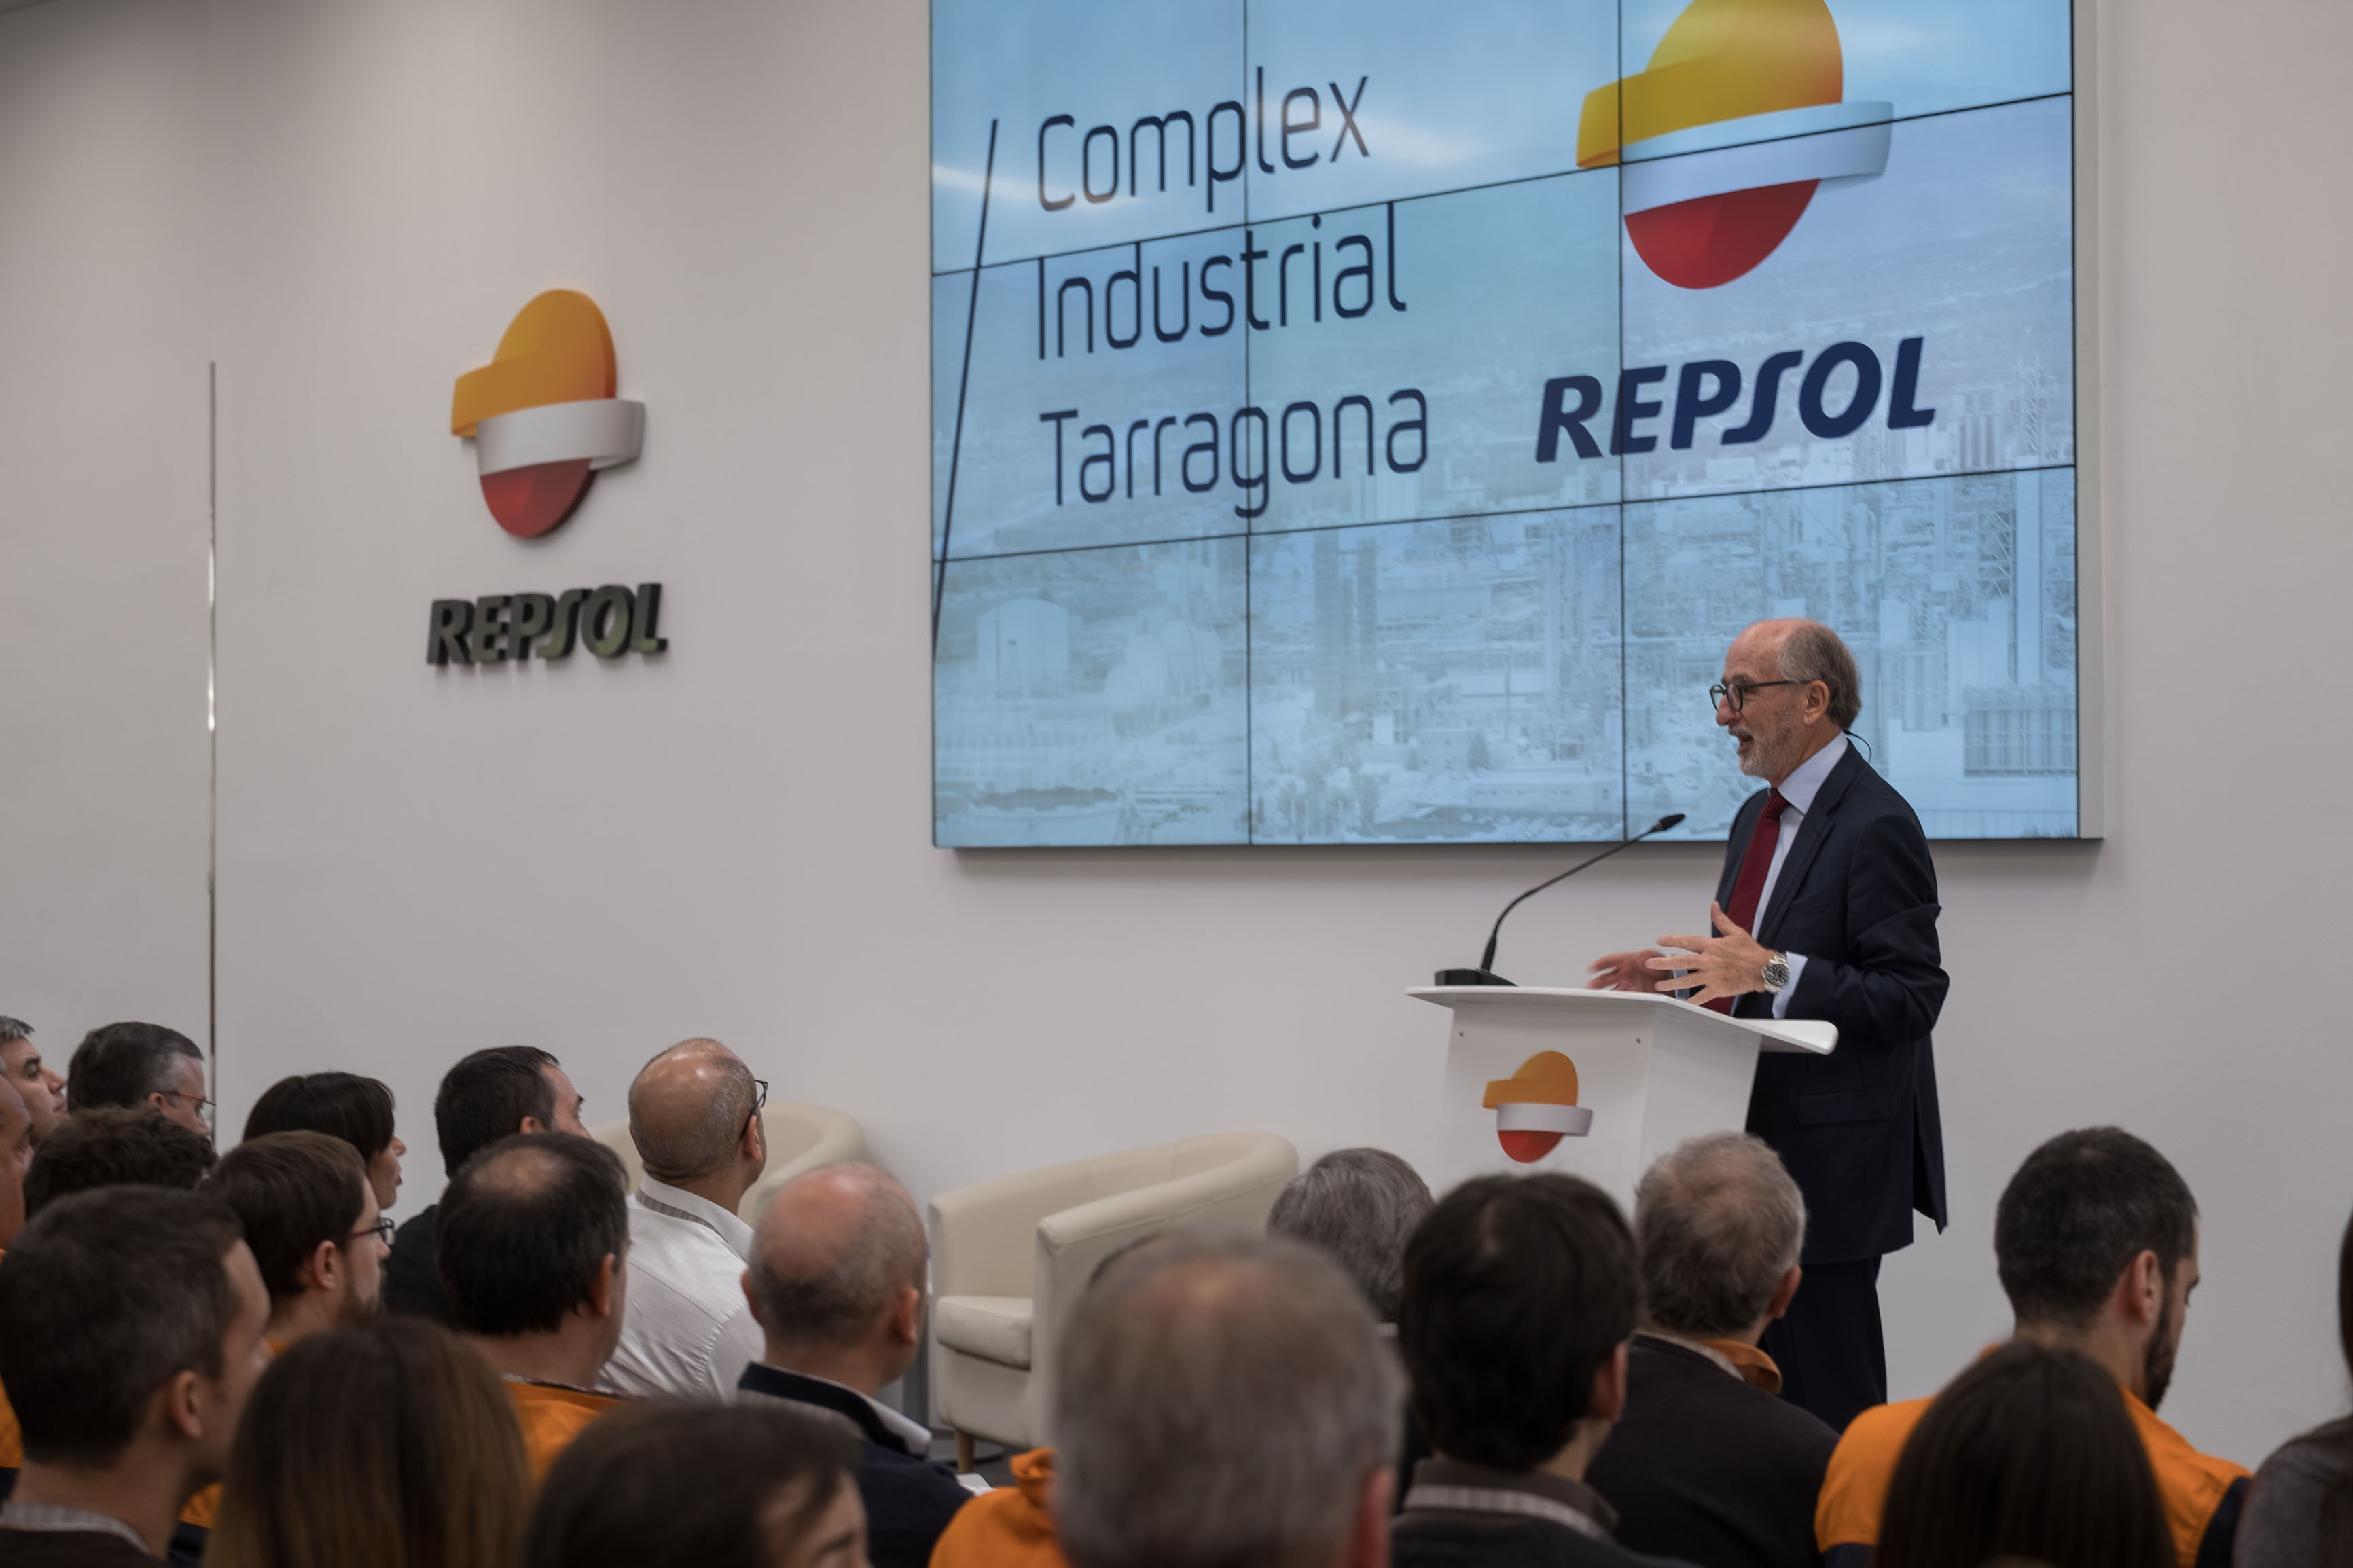 •El president de Repsol s’ha reunit amb un nodrit grup d’empleats del Complex Industrial de Tarragona per explicar-los l’estratègia de la companyia.